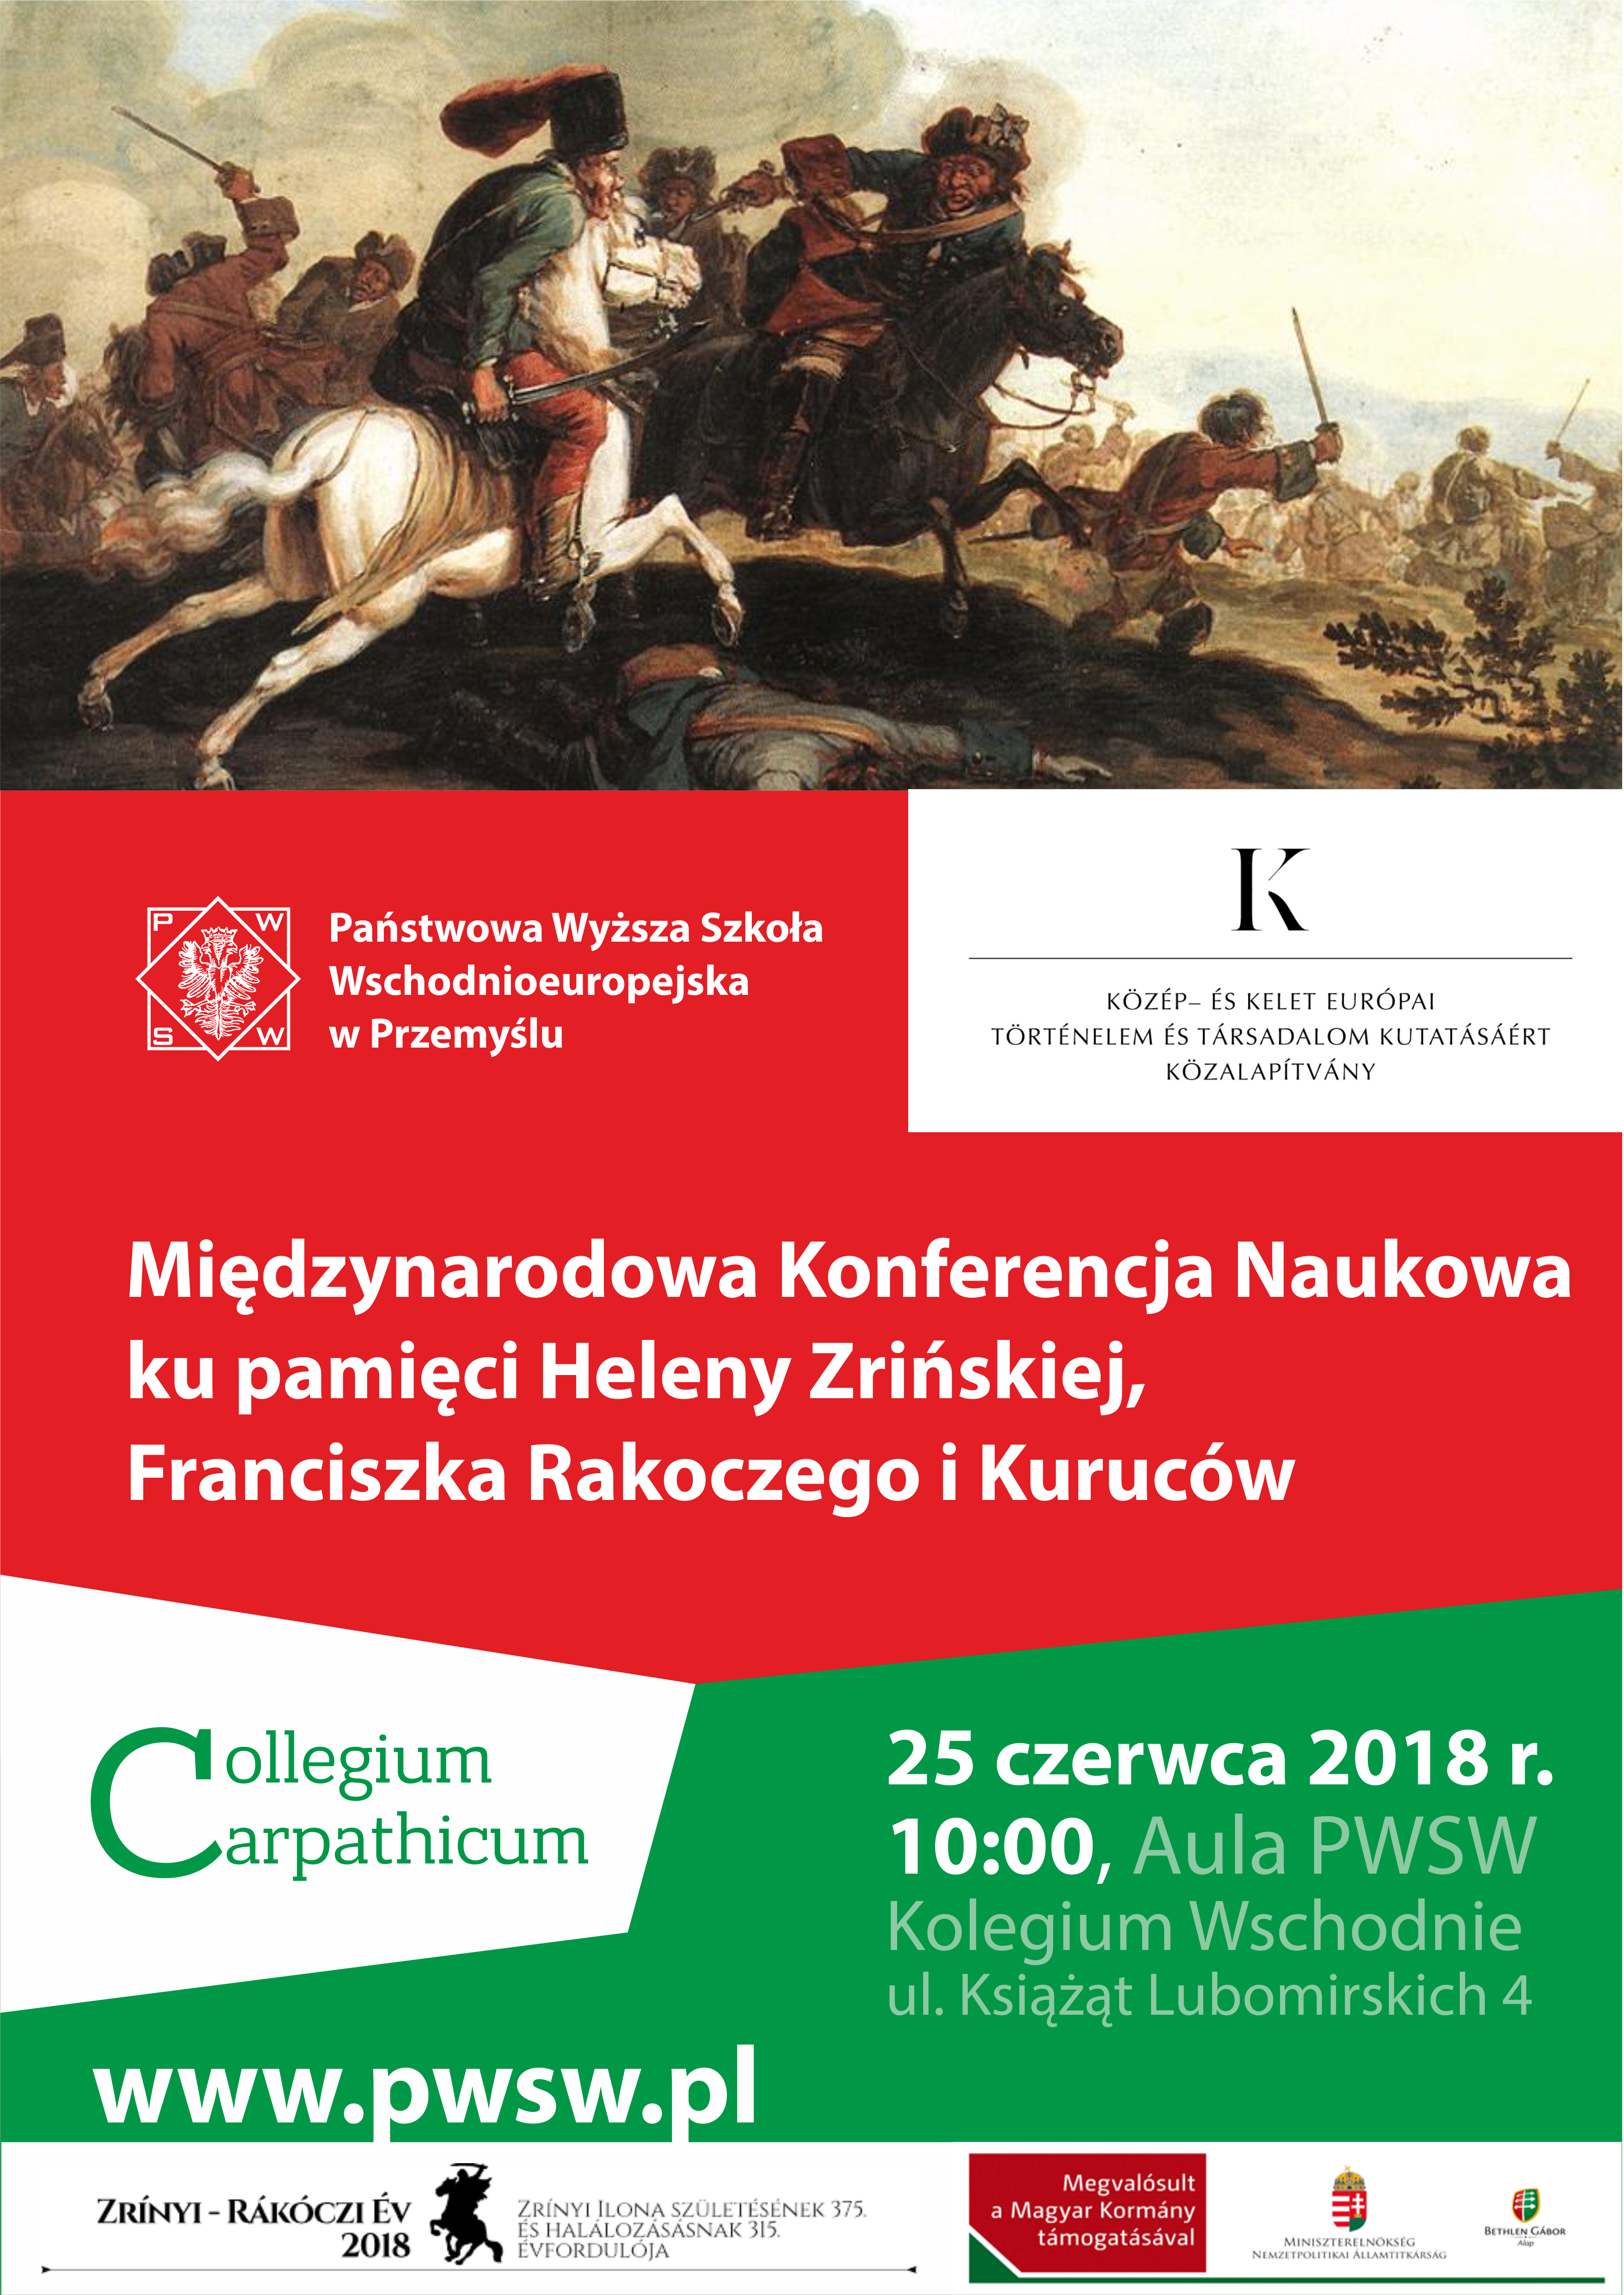 Zapraszamy na międzynarodową konferencję naukową ku pamięci Heleny Zrińskiej, Franciszka Rakoczego i Kuruców